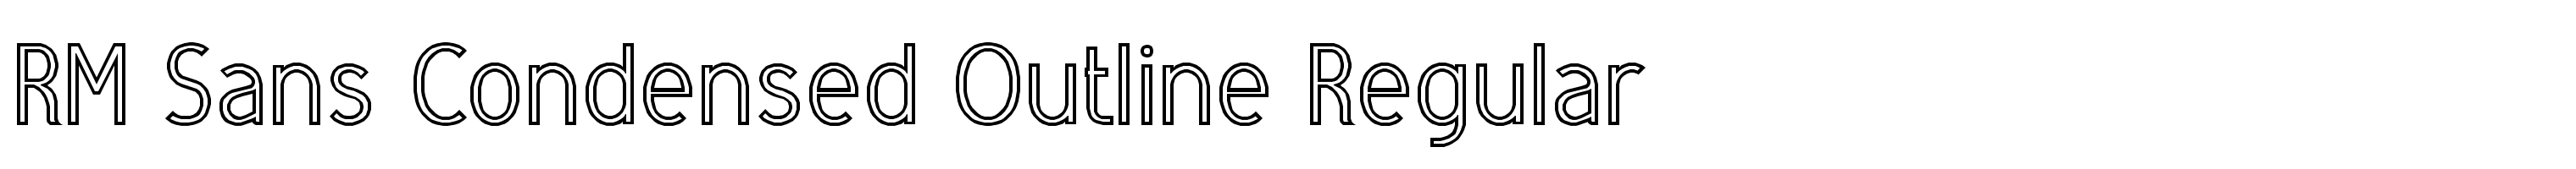 RM Sans Condensed Outline Regular